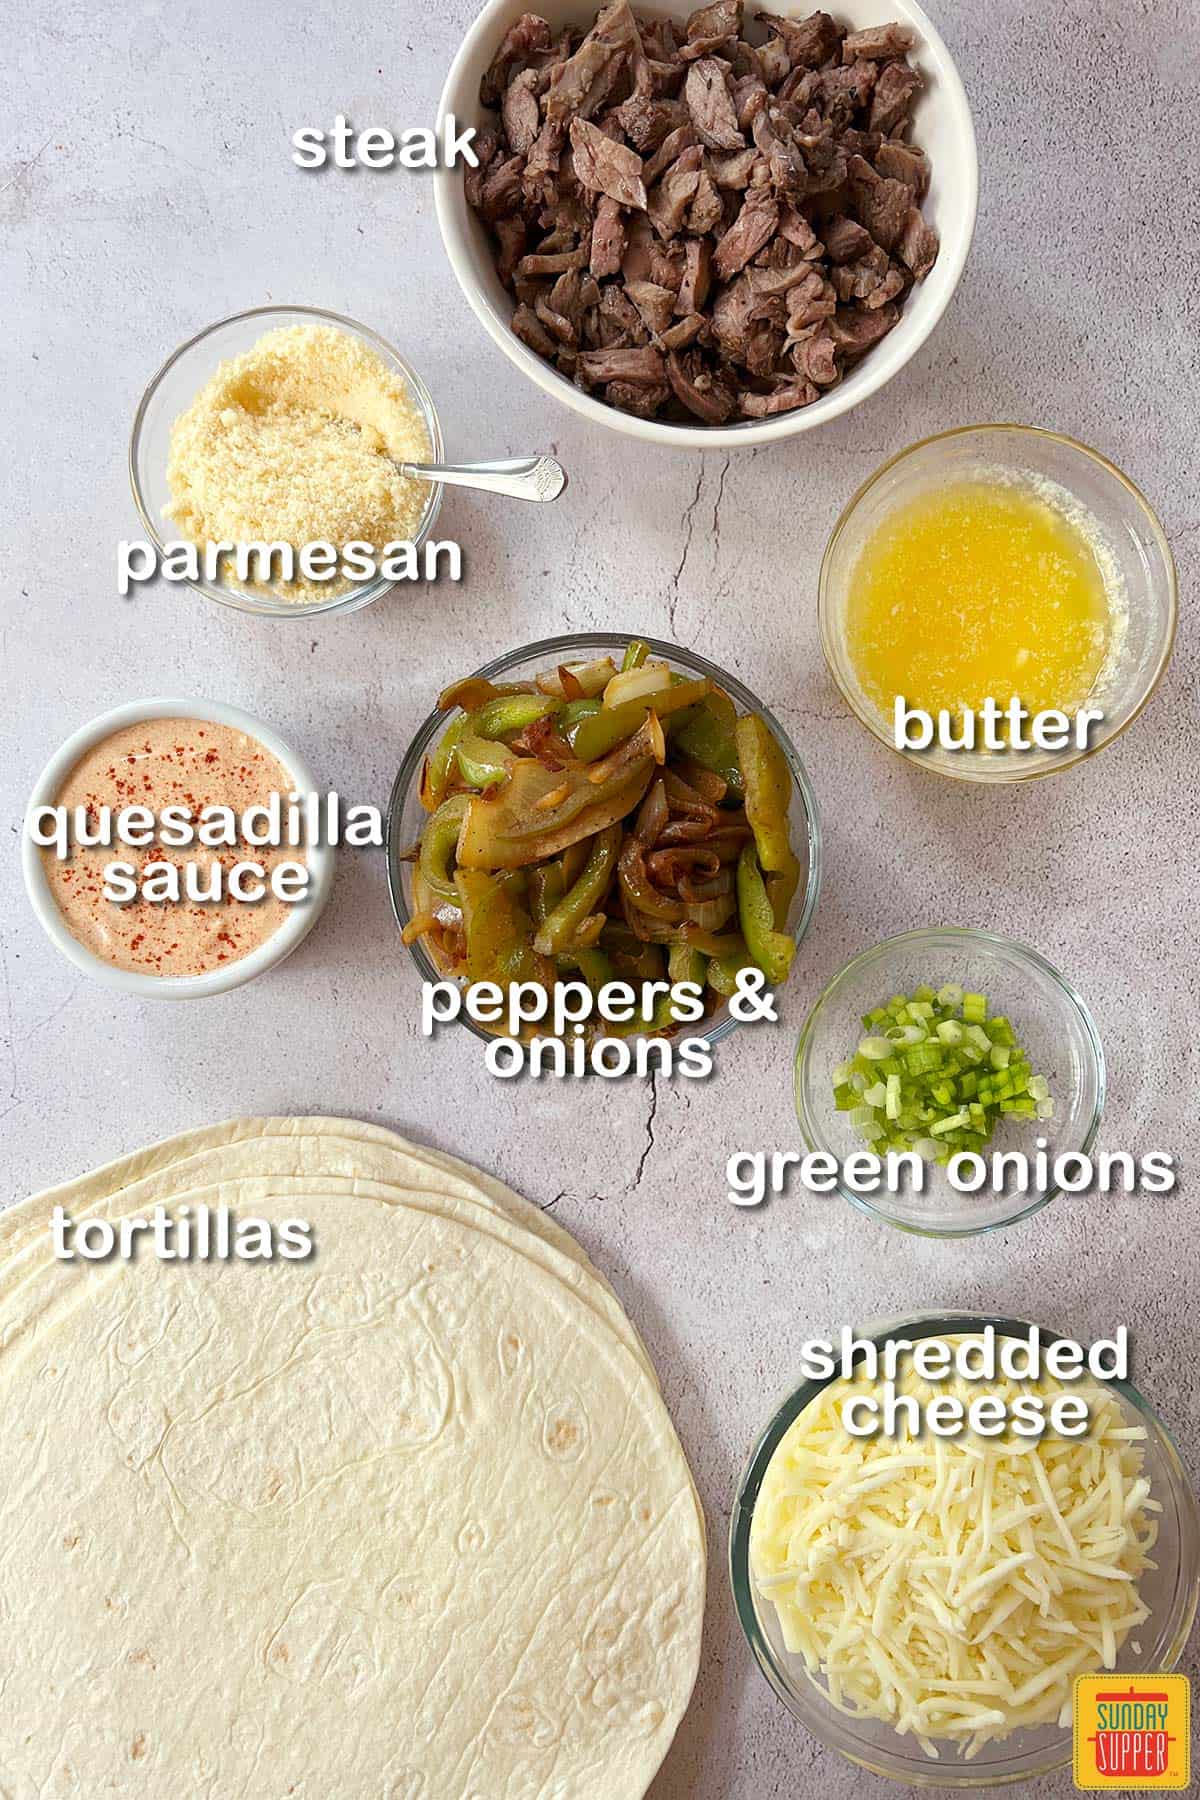 Ingredients for Steak Quesadillas